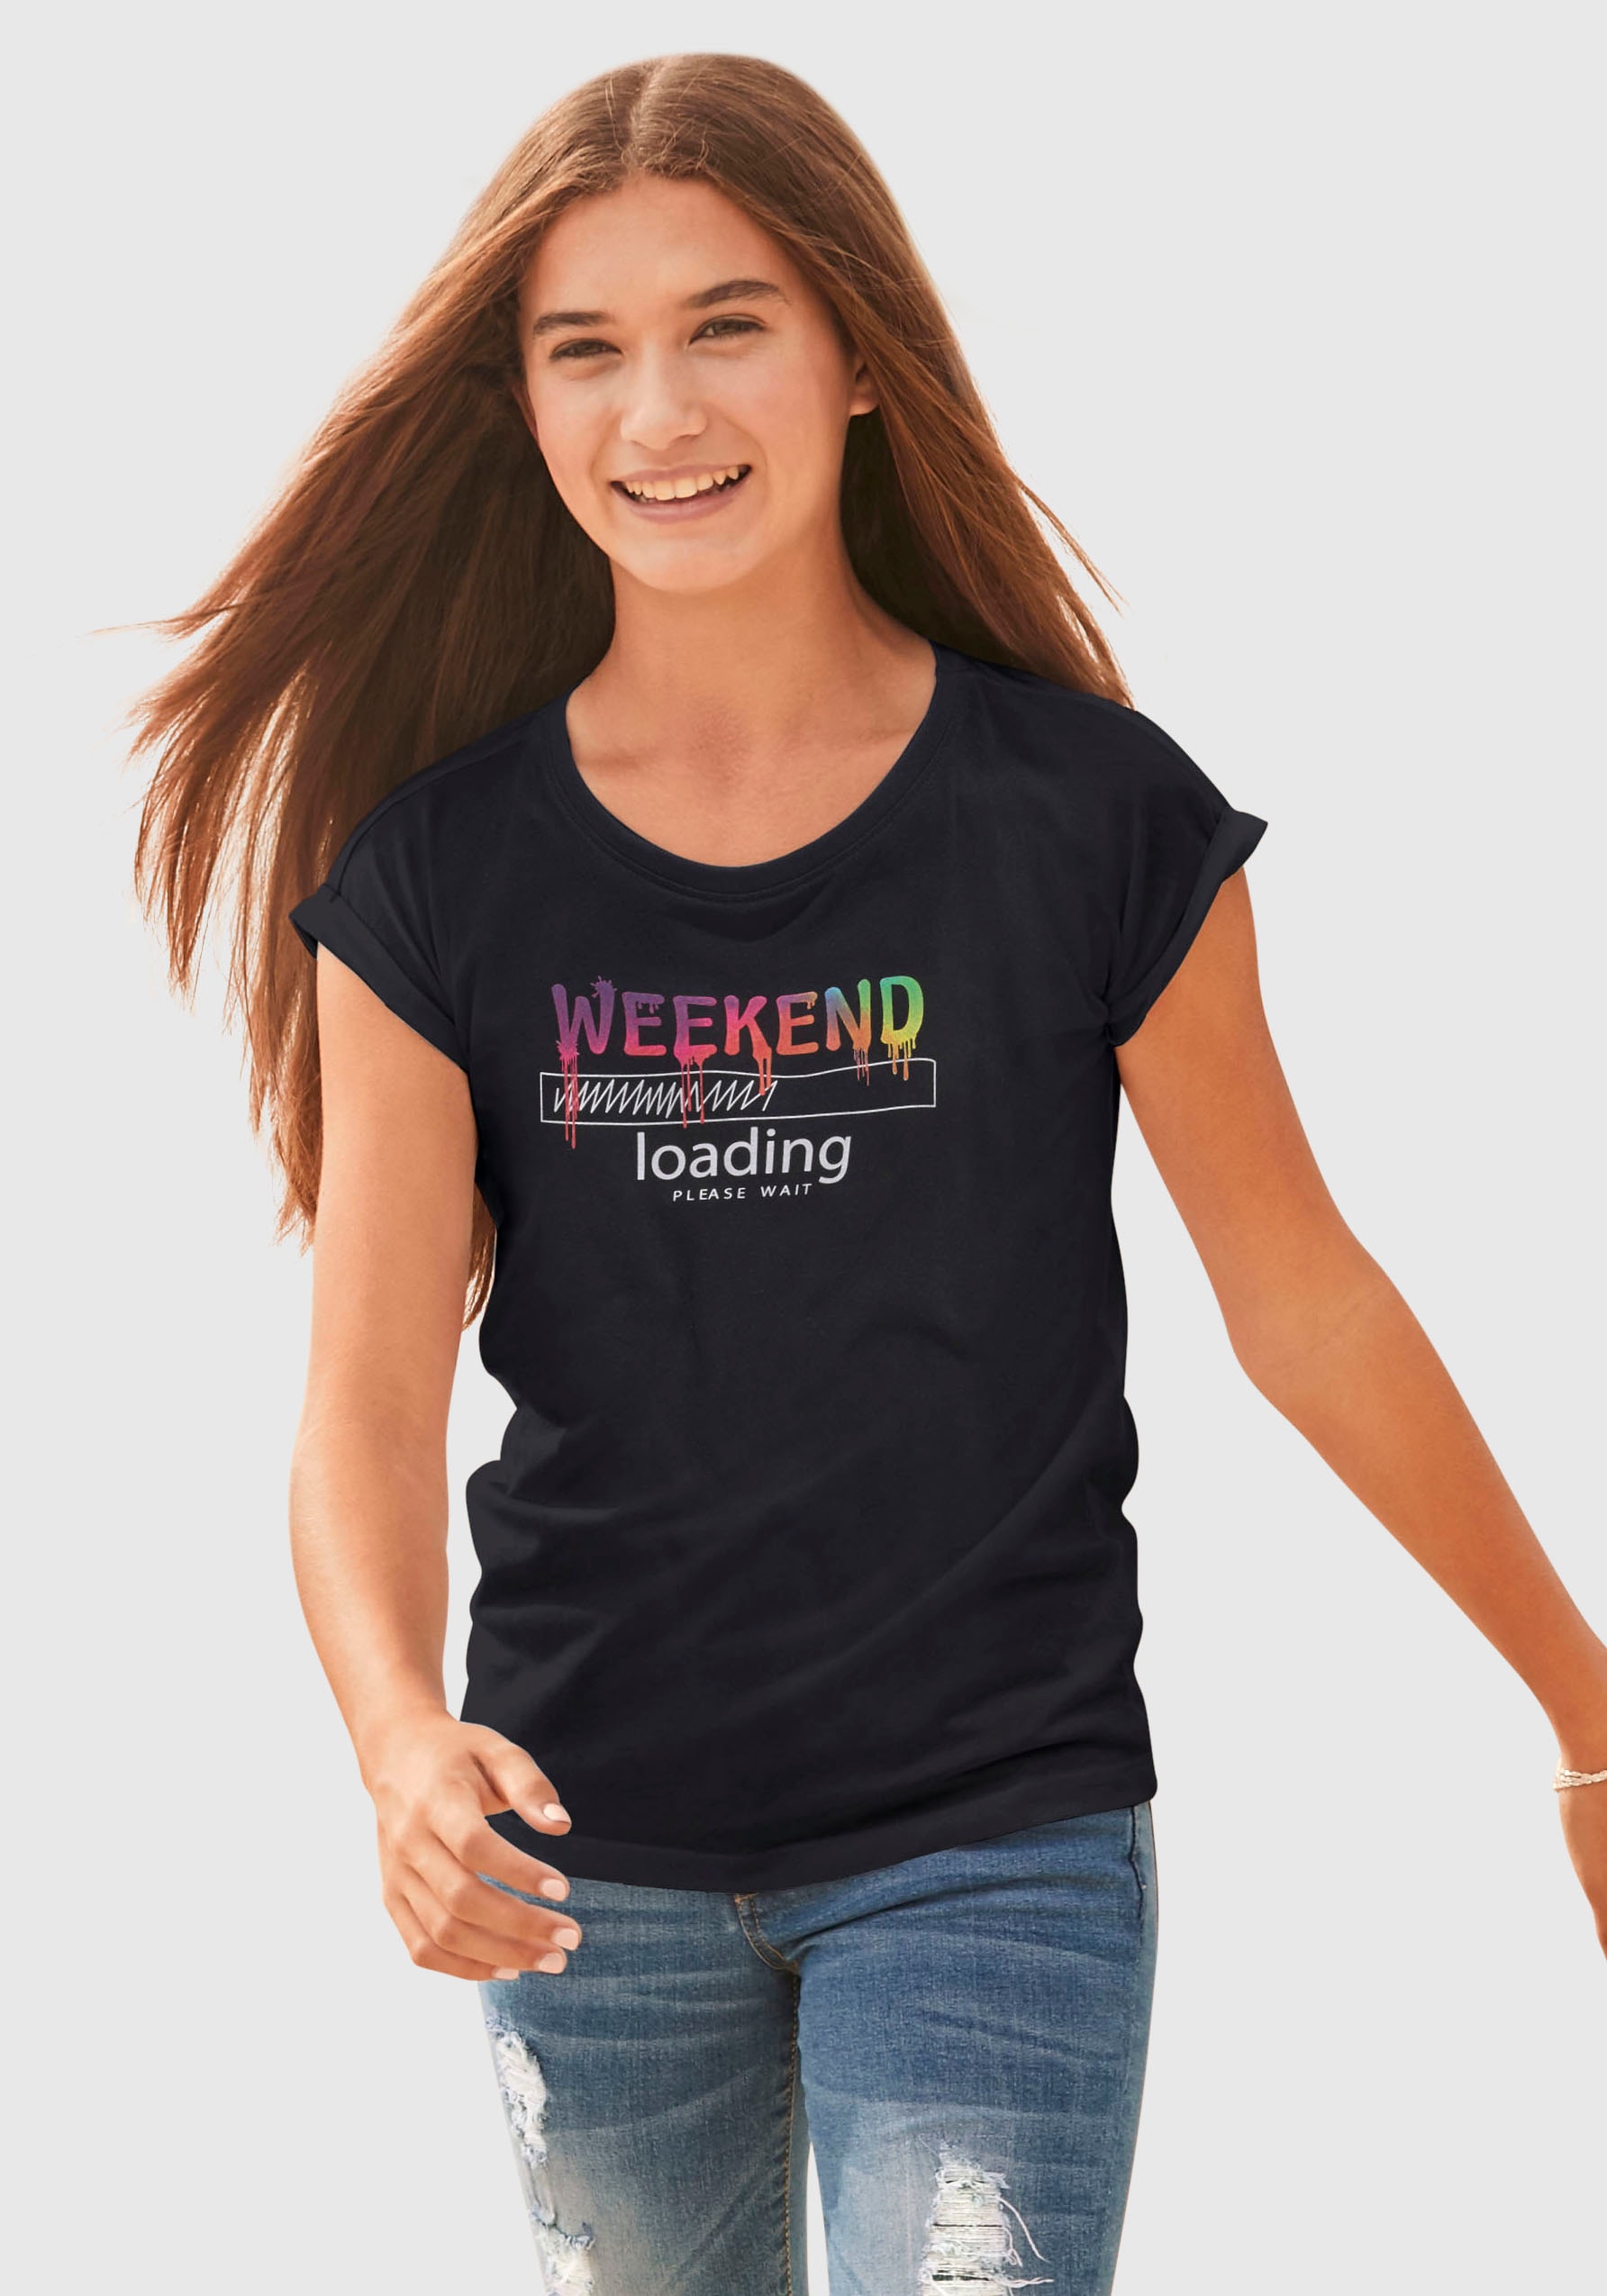 Regenbogen-Druckfarben ✵ legerer kaufen weiter in wait«, unterschiedlich T-Shirt online KIDSWORLD Form, sind | loading...please »WEEKEND Jelmoli-Versand